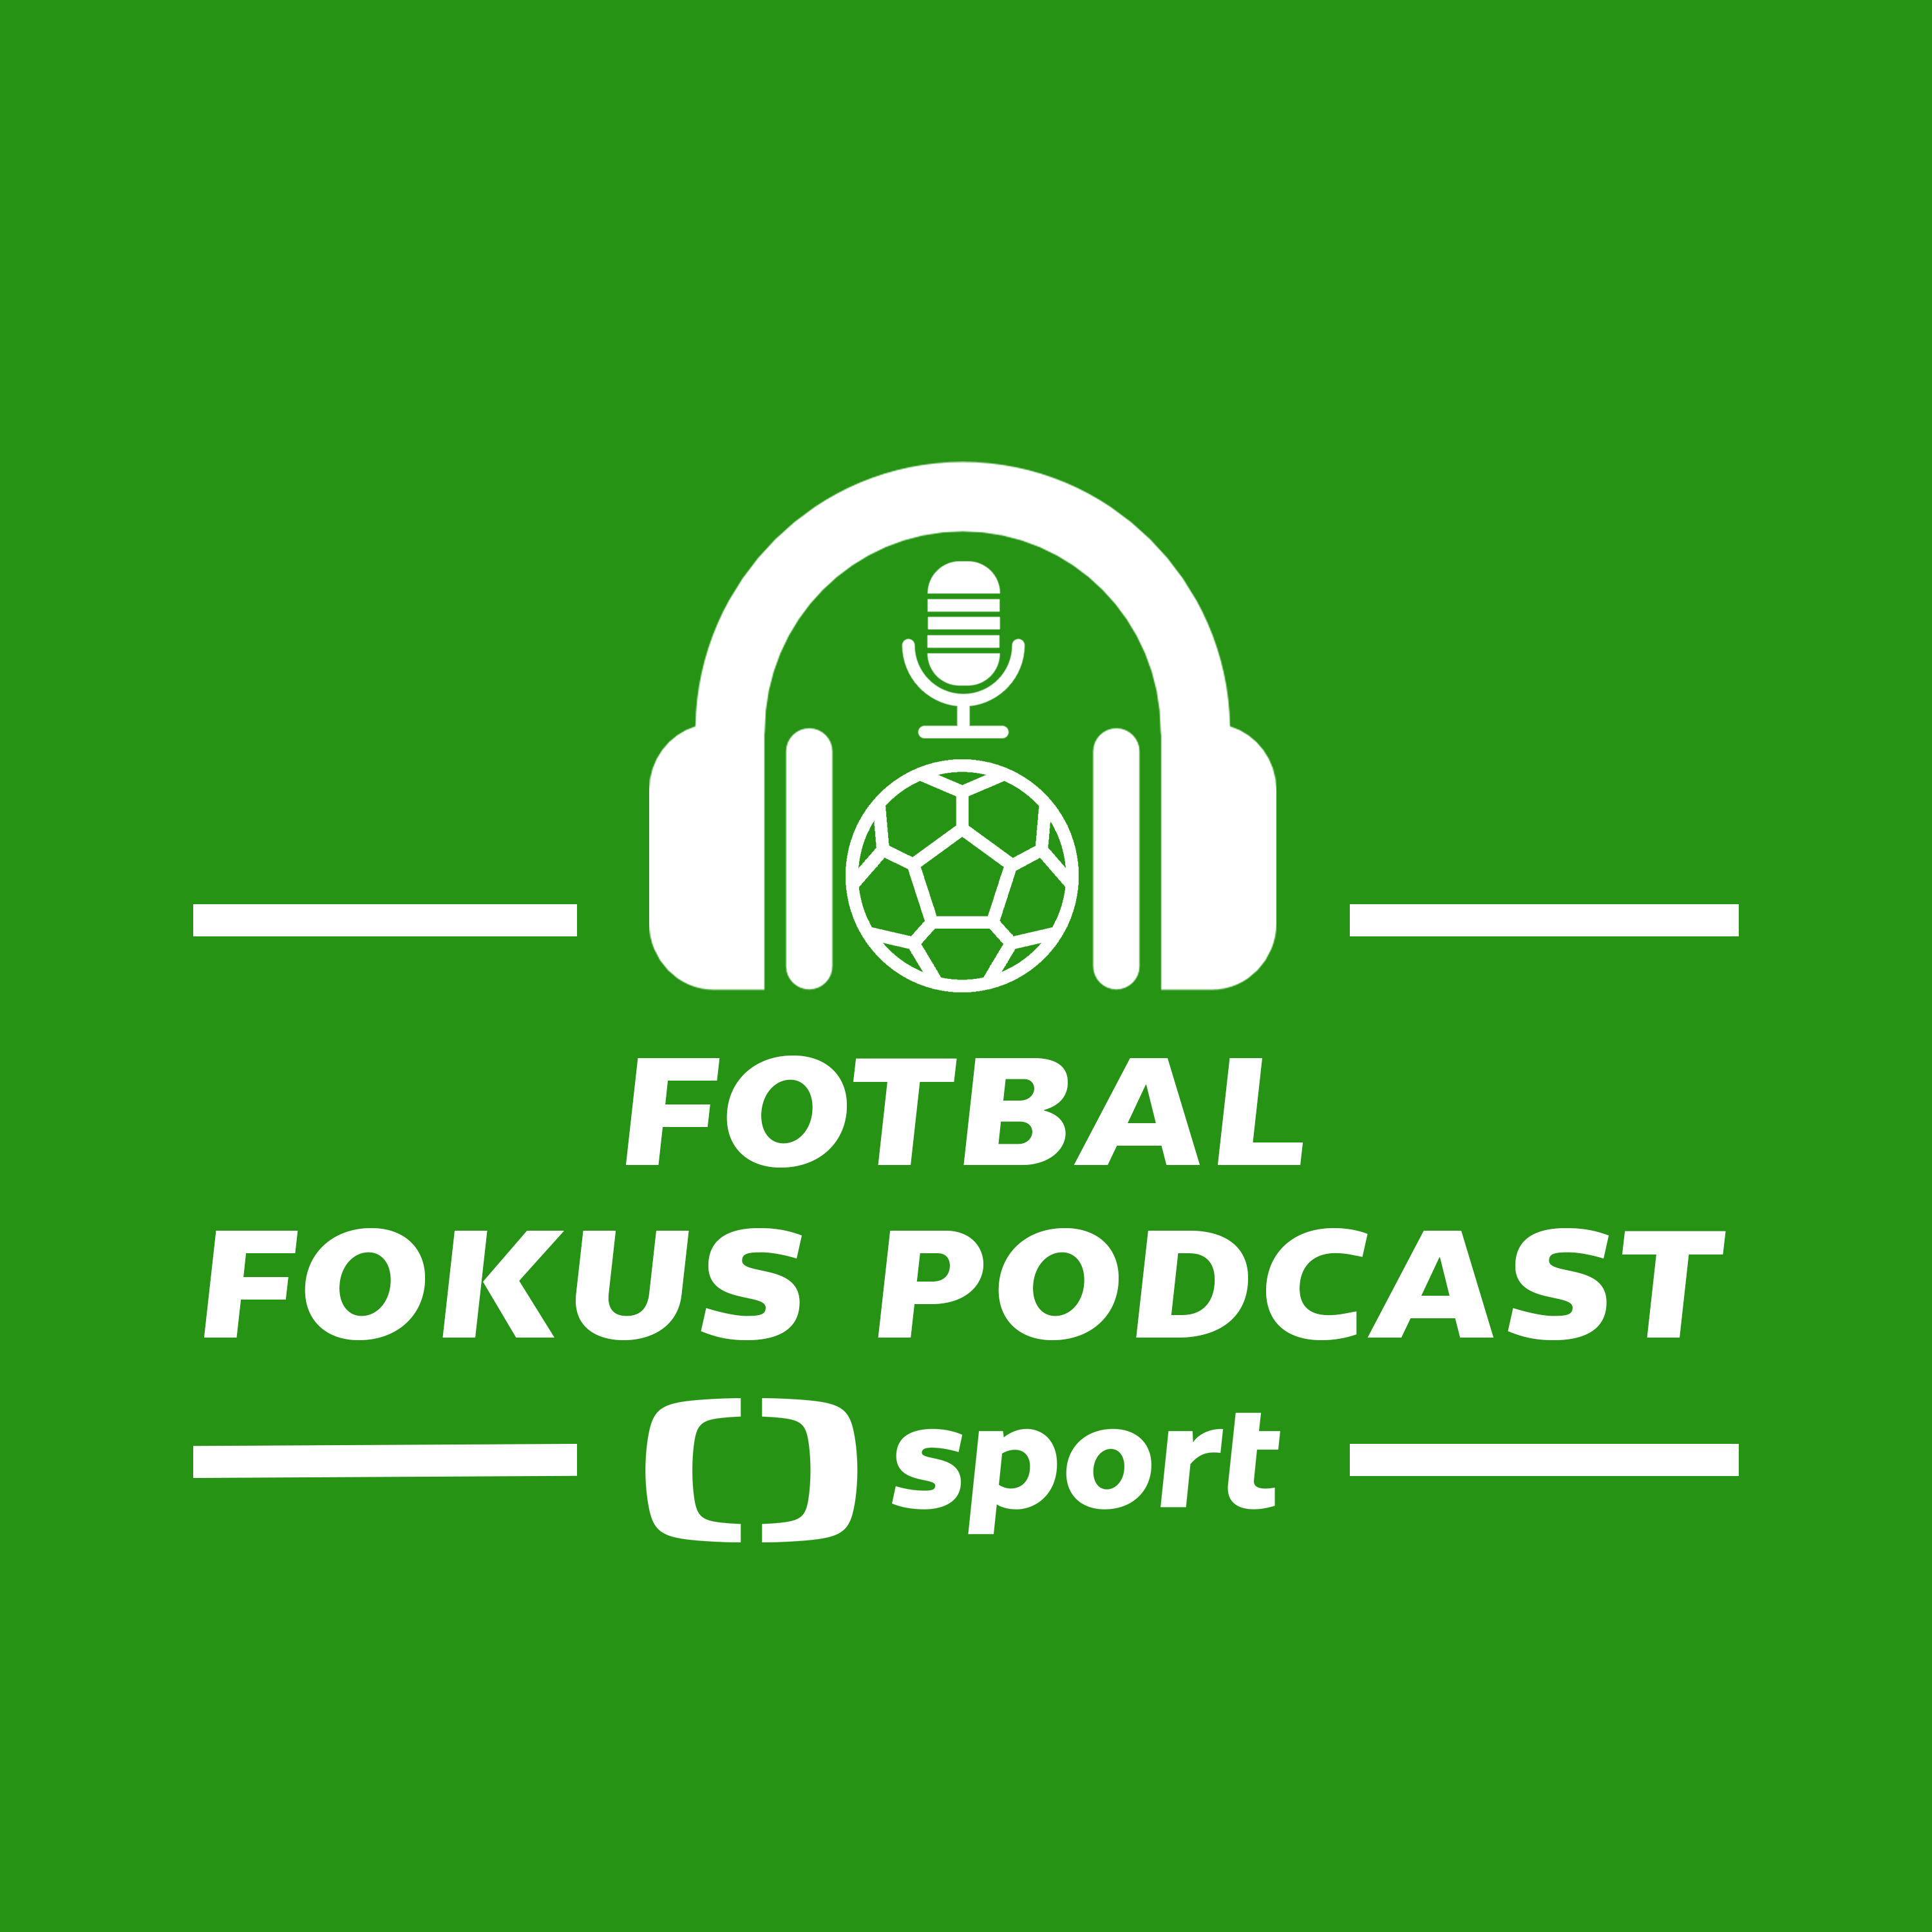 Fotbal fokus podcast: Galavýprask, dvojitá nálož derby, plot v Edenu